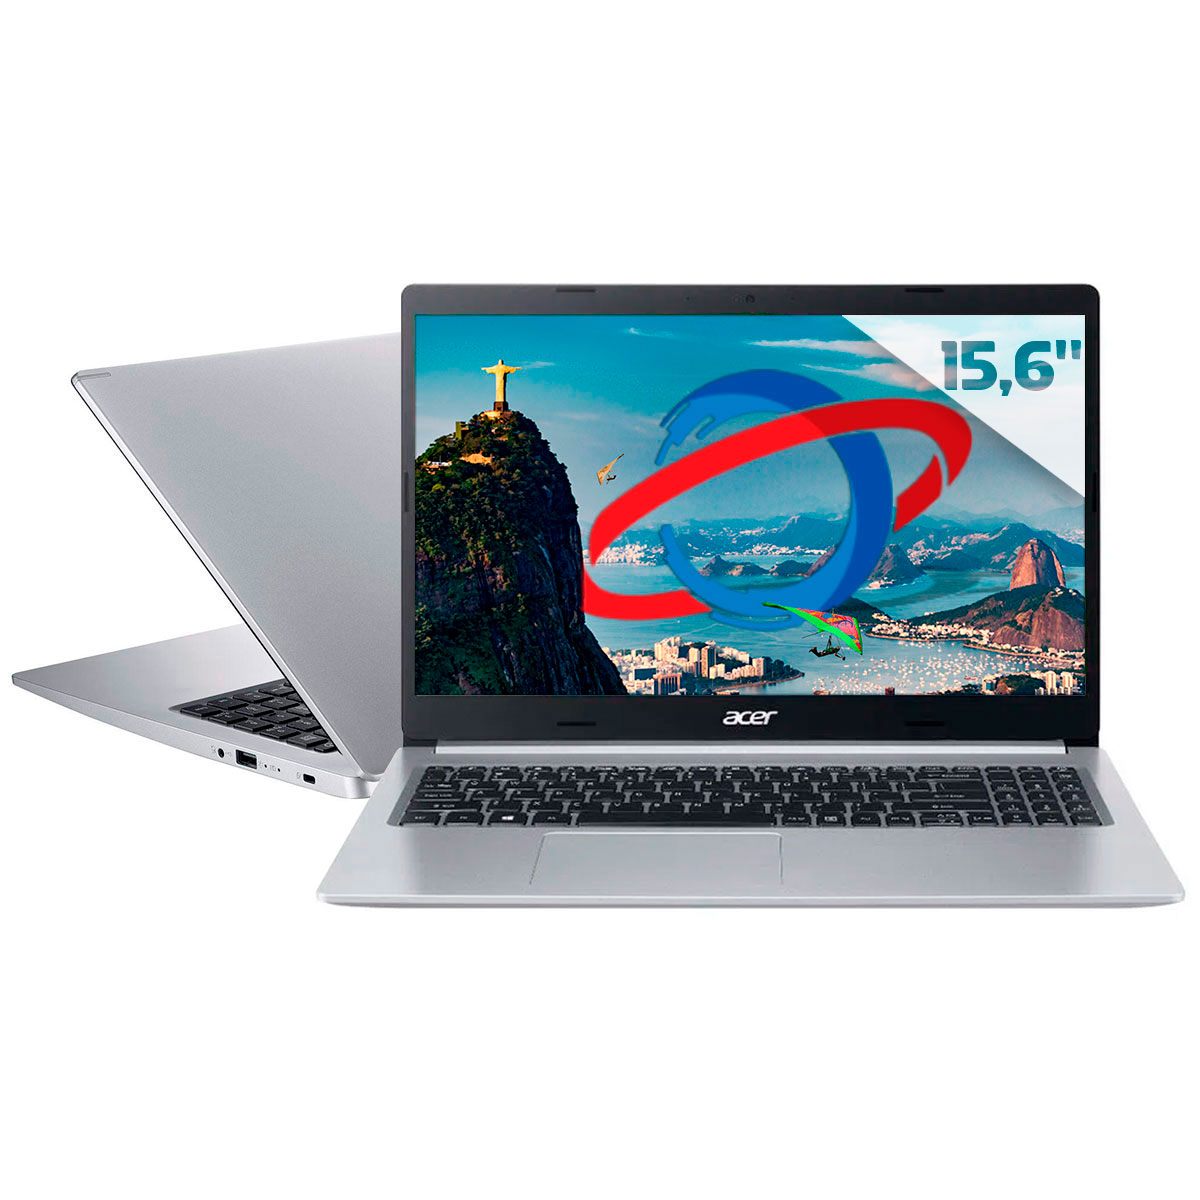 Notebook Acer Aspire A515-45-R84H - Ryzen 5 5500U, RAM 12GB, SSD 256GB, Tela 15.6